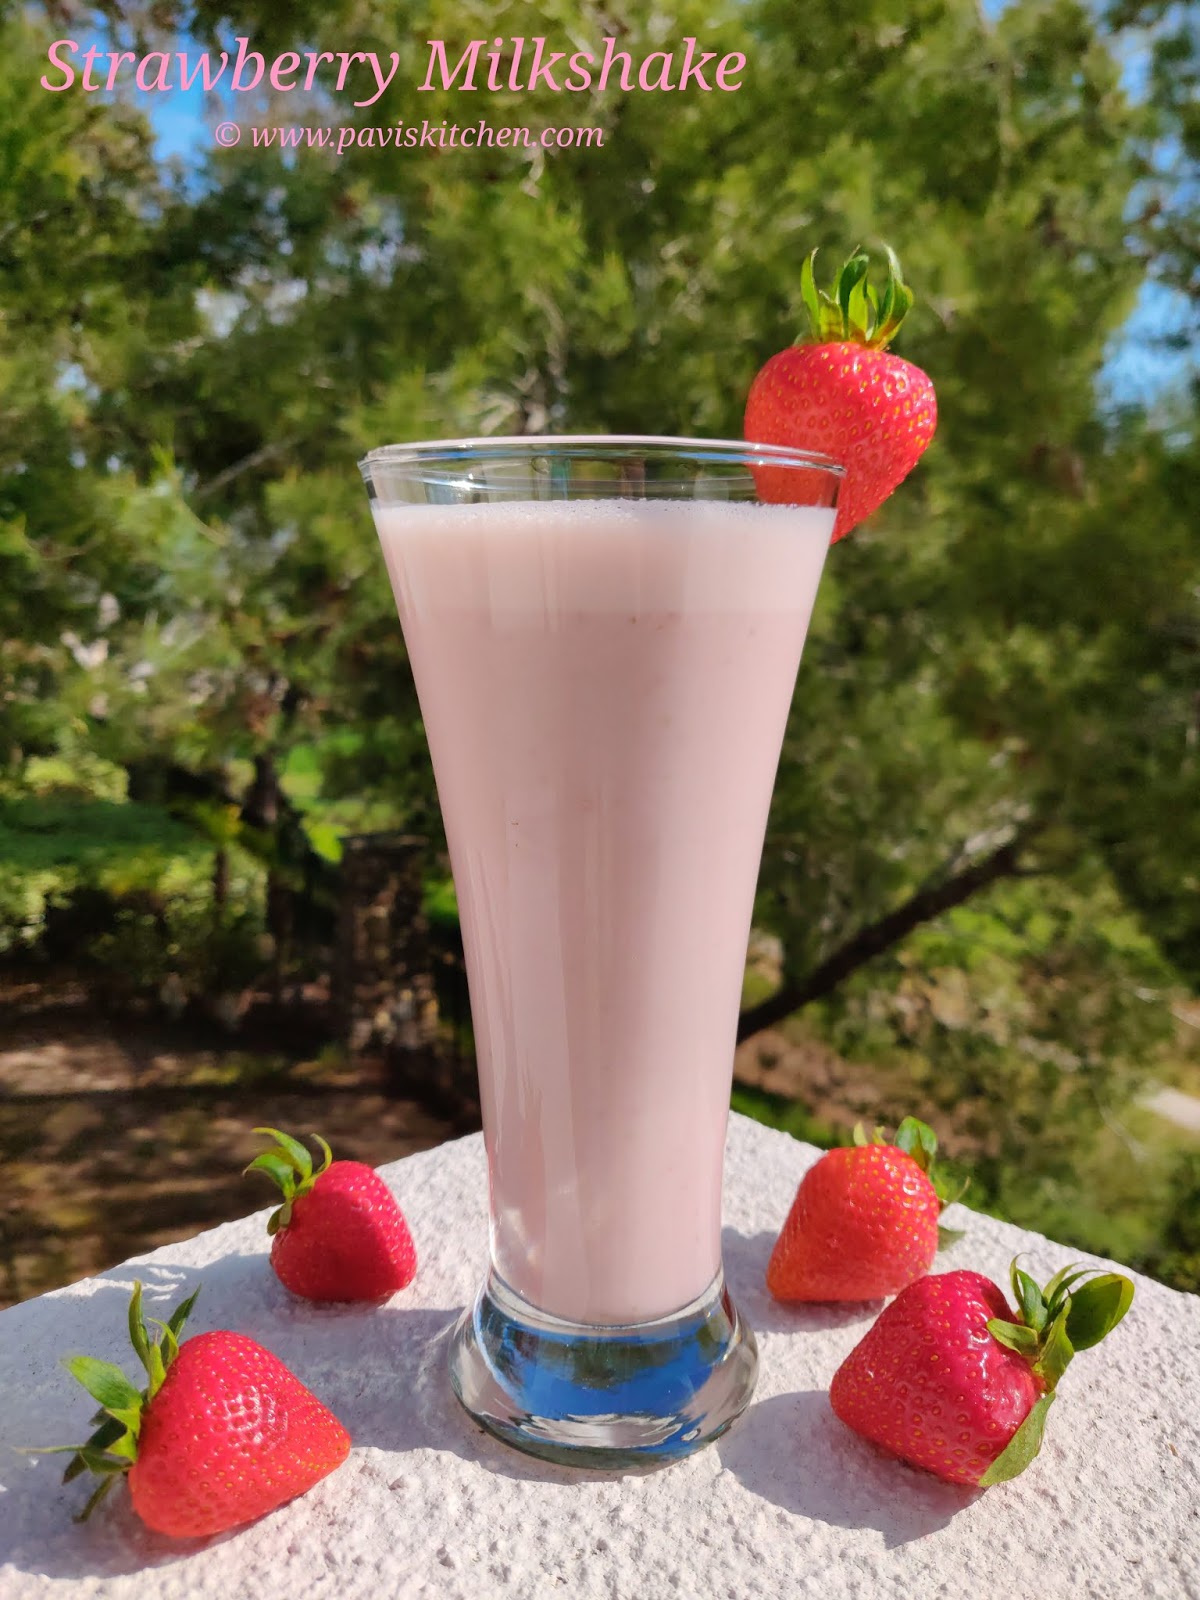 Homemade Healthy Strawberry Milkshake Recipe | Easy Fresh Strawberry Milkshake